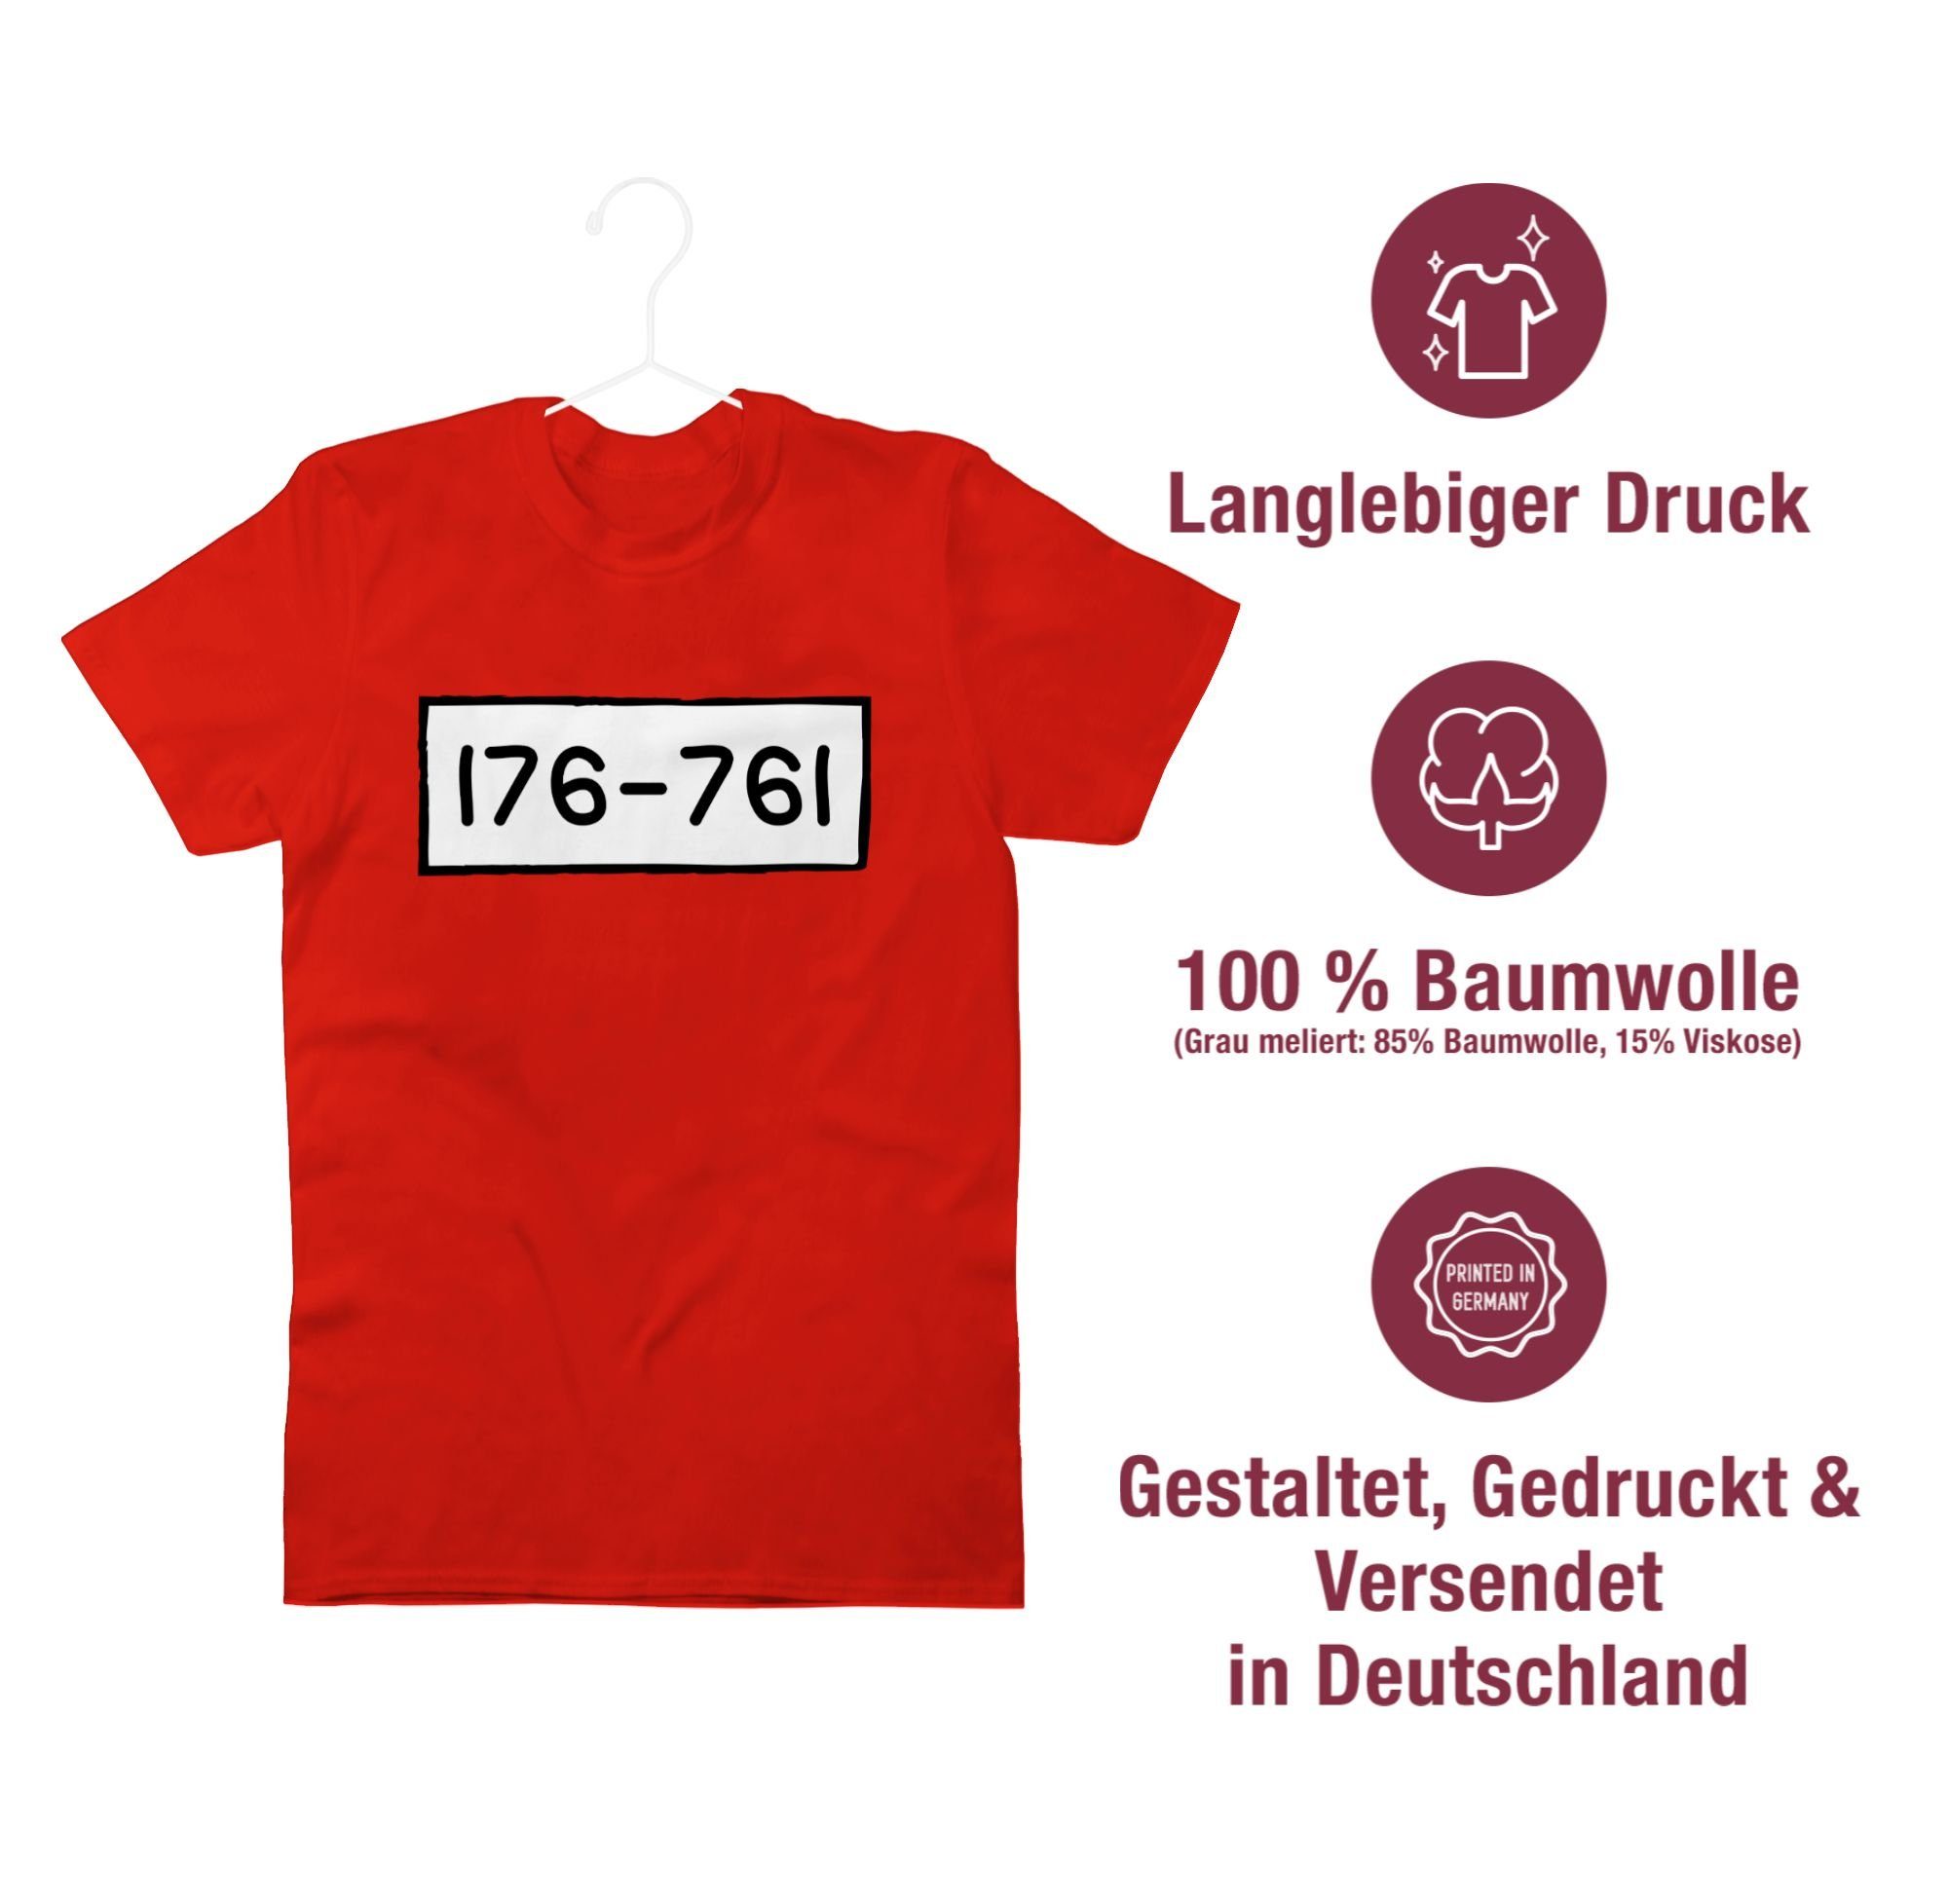 Shirtracer T-Shirt Panzerknacker Nummern Fasching & Karneval Rot 01